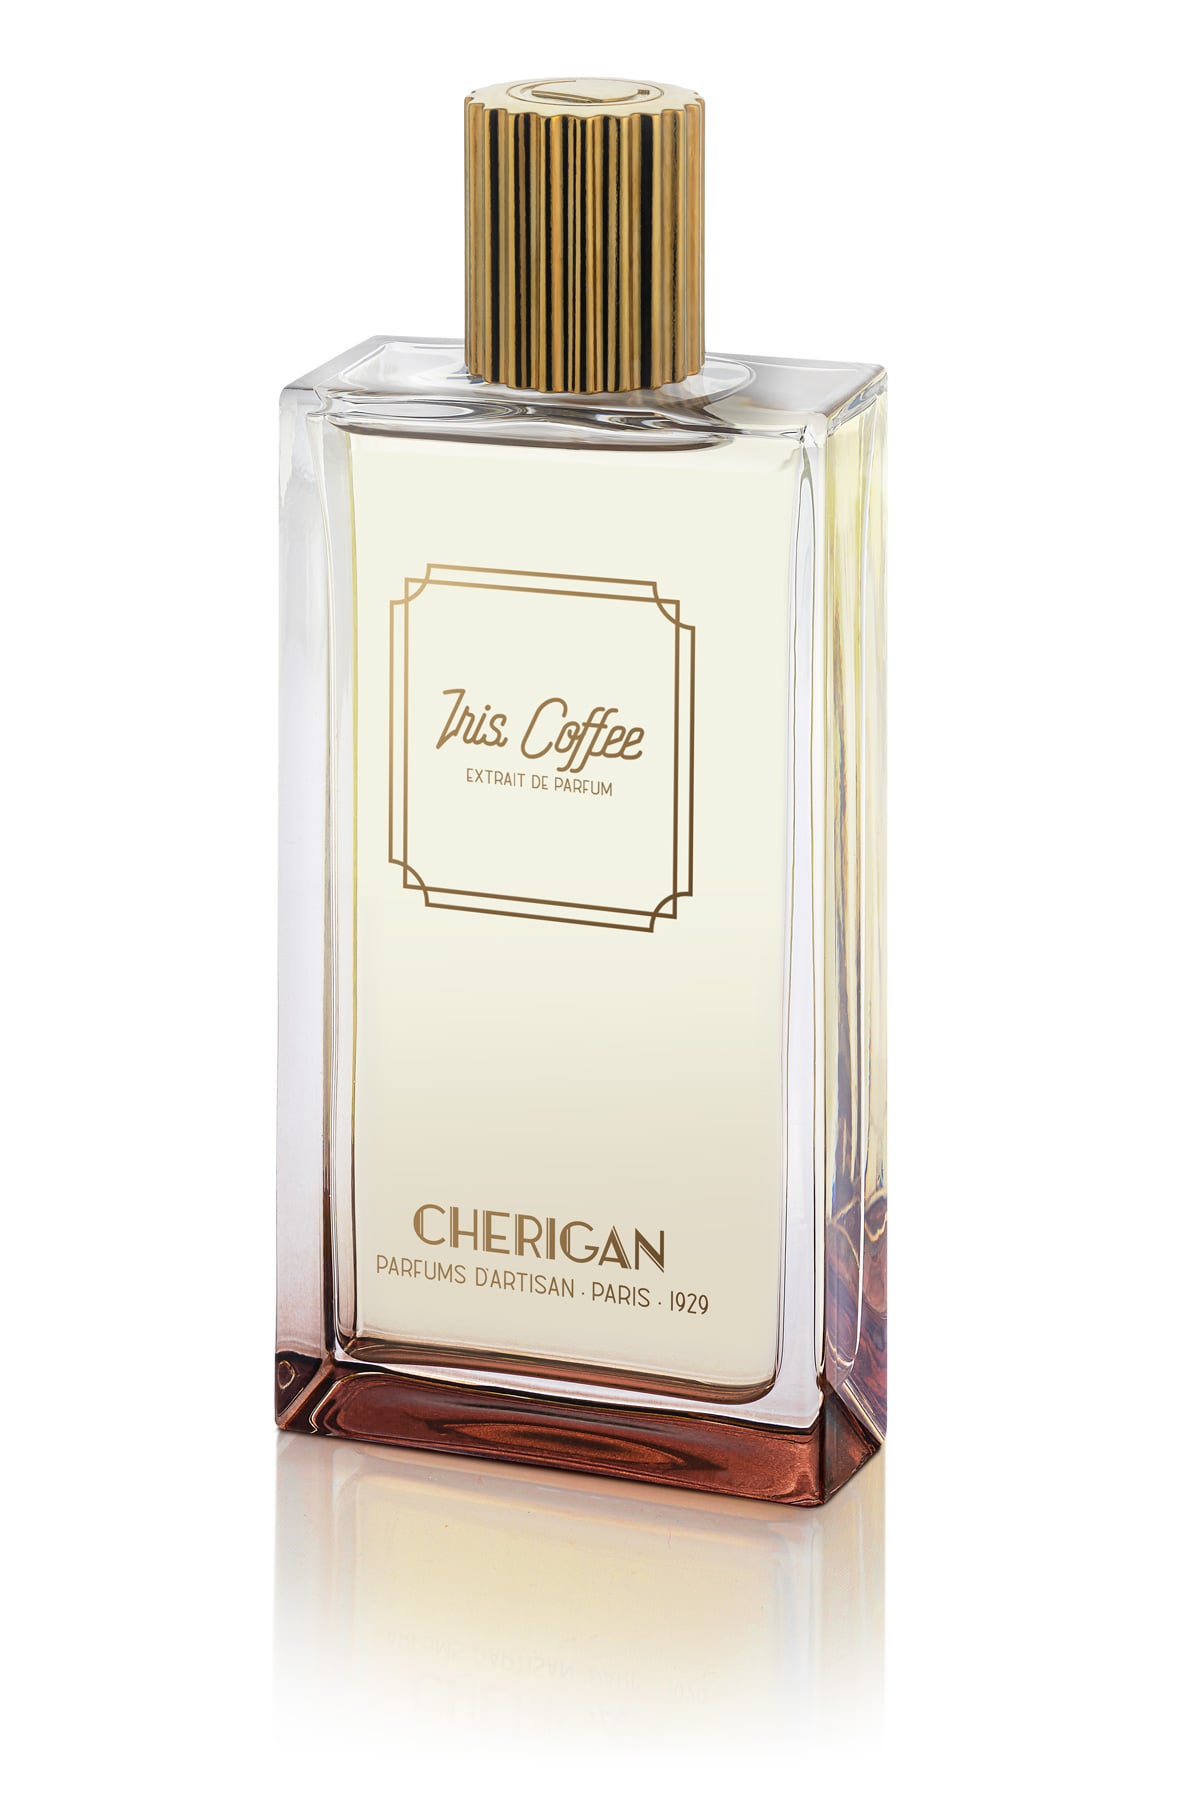 Iris Coffee CHERIGAN Extrait de parfum – CHERIGAN PARIS 1929